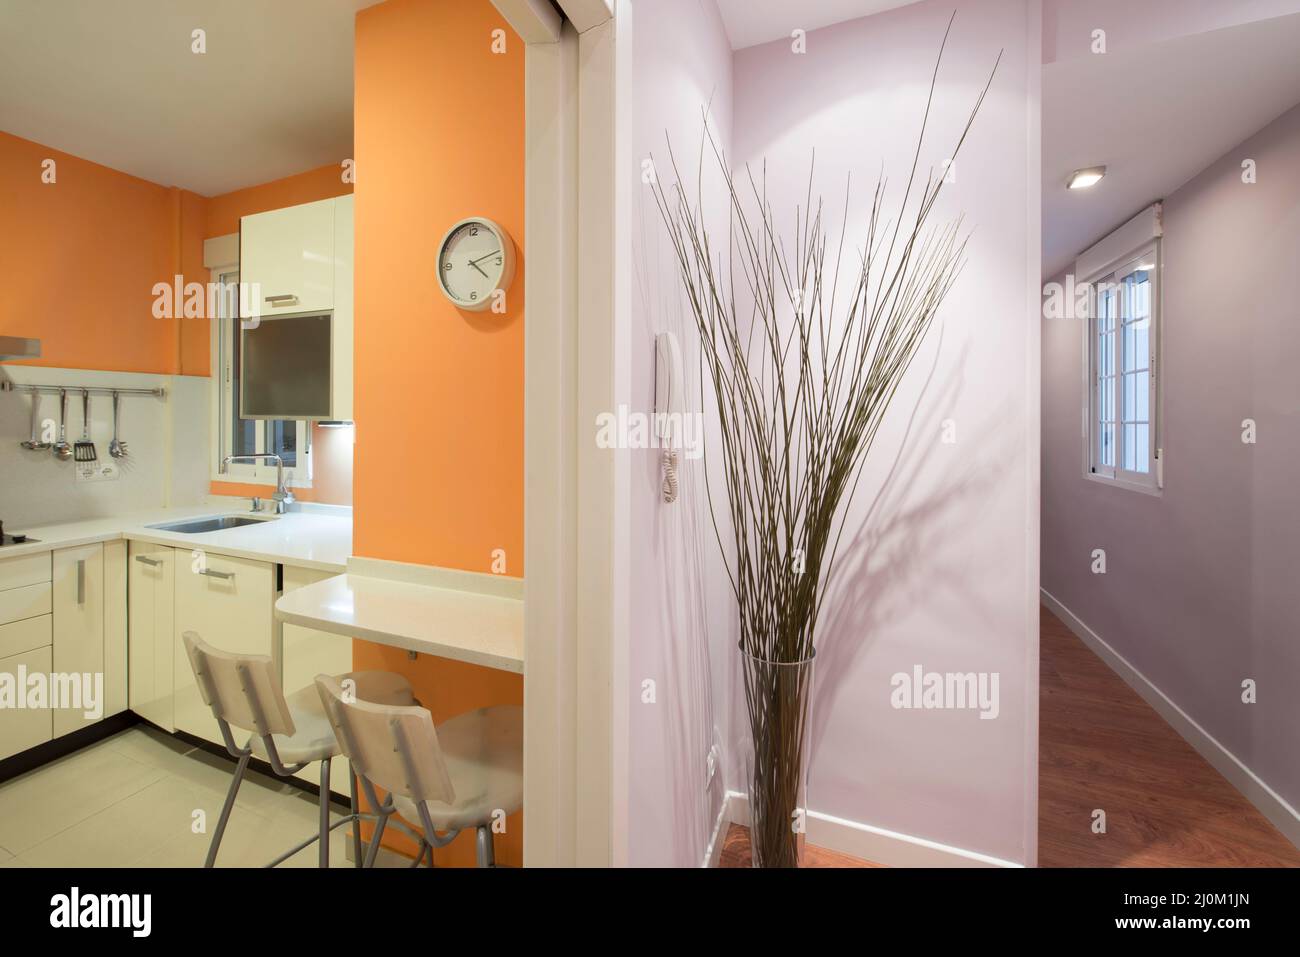 Hall d'entrée d'une maison avec couloirs lavande et entrée d'une cuisine avec armoires blanches et murs orange Banque D'Images